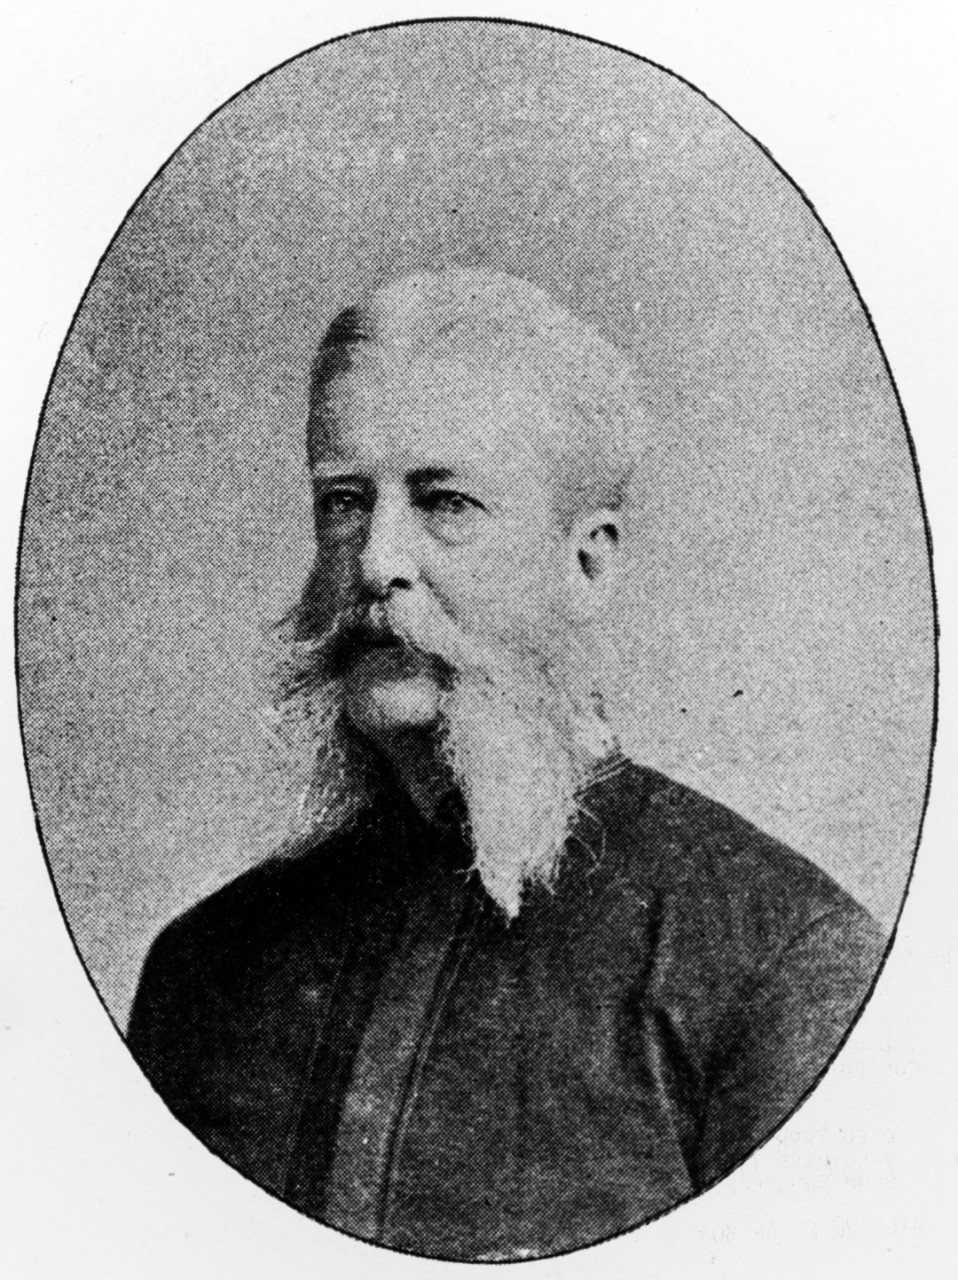 Edward Yorke Mc Cauley